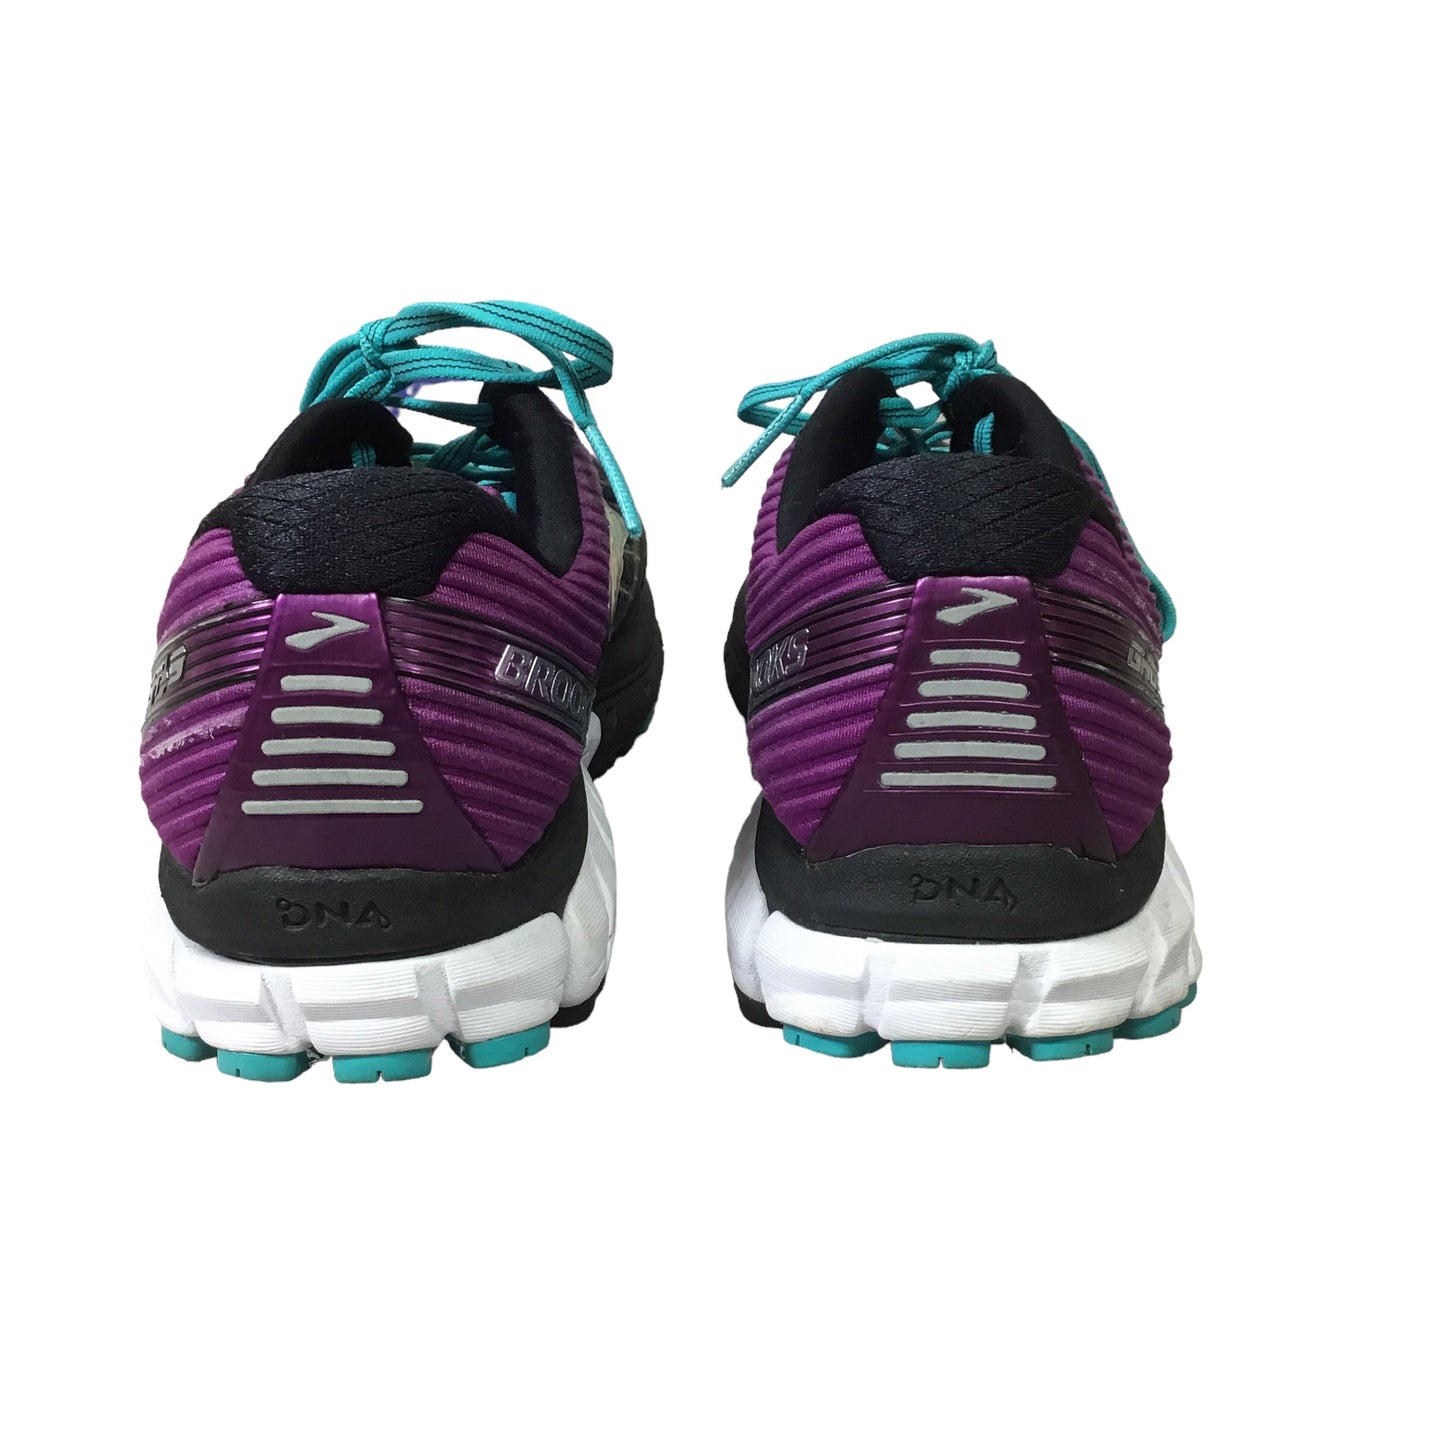 Black & Purple Shoes Athletic Brooks, Size 8